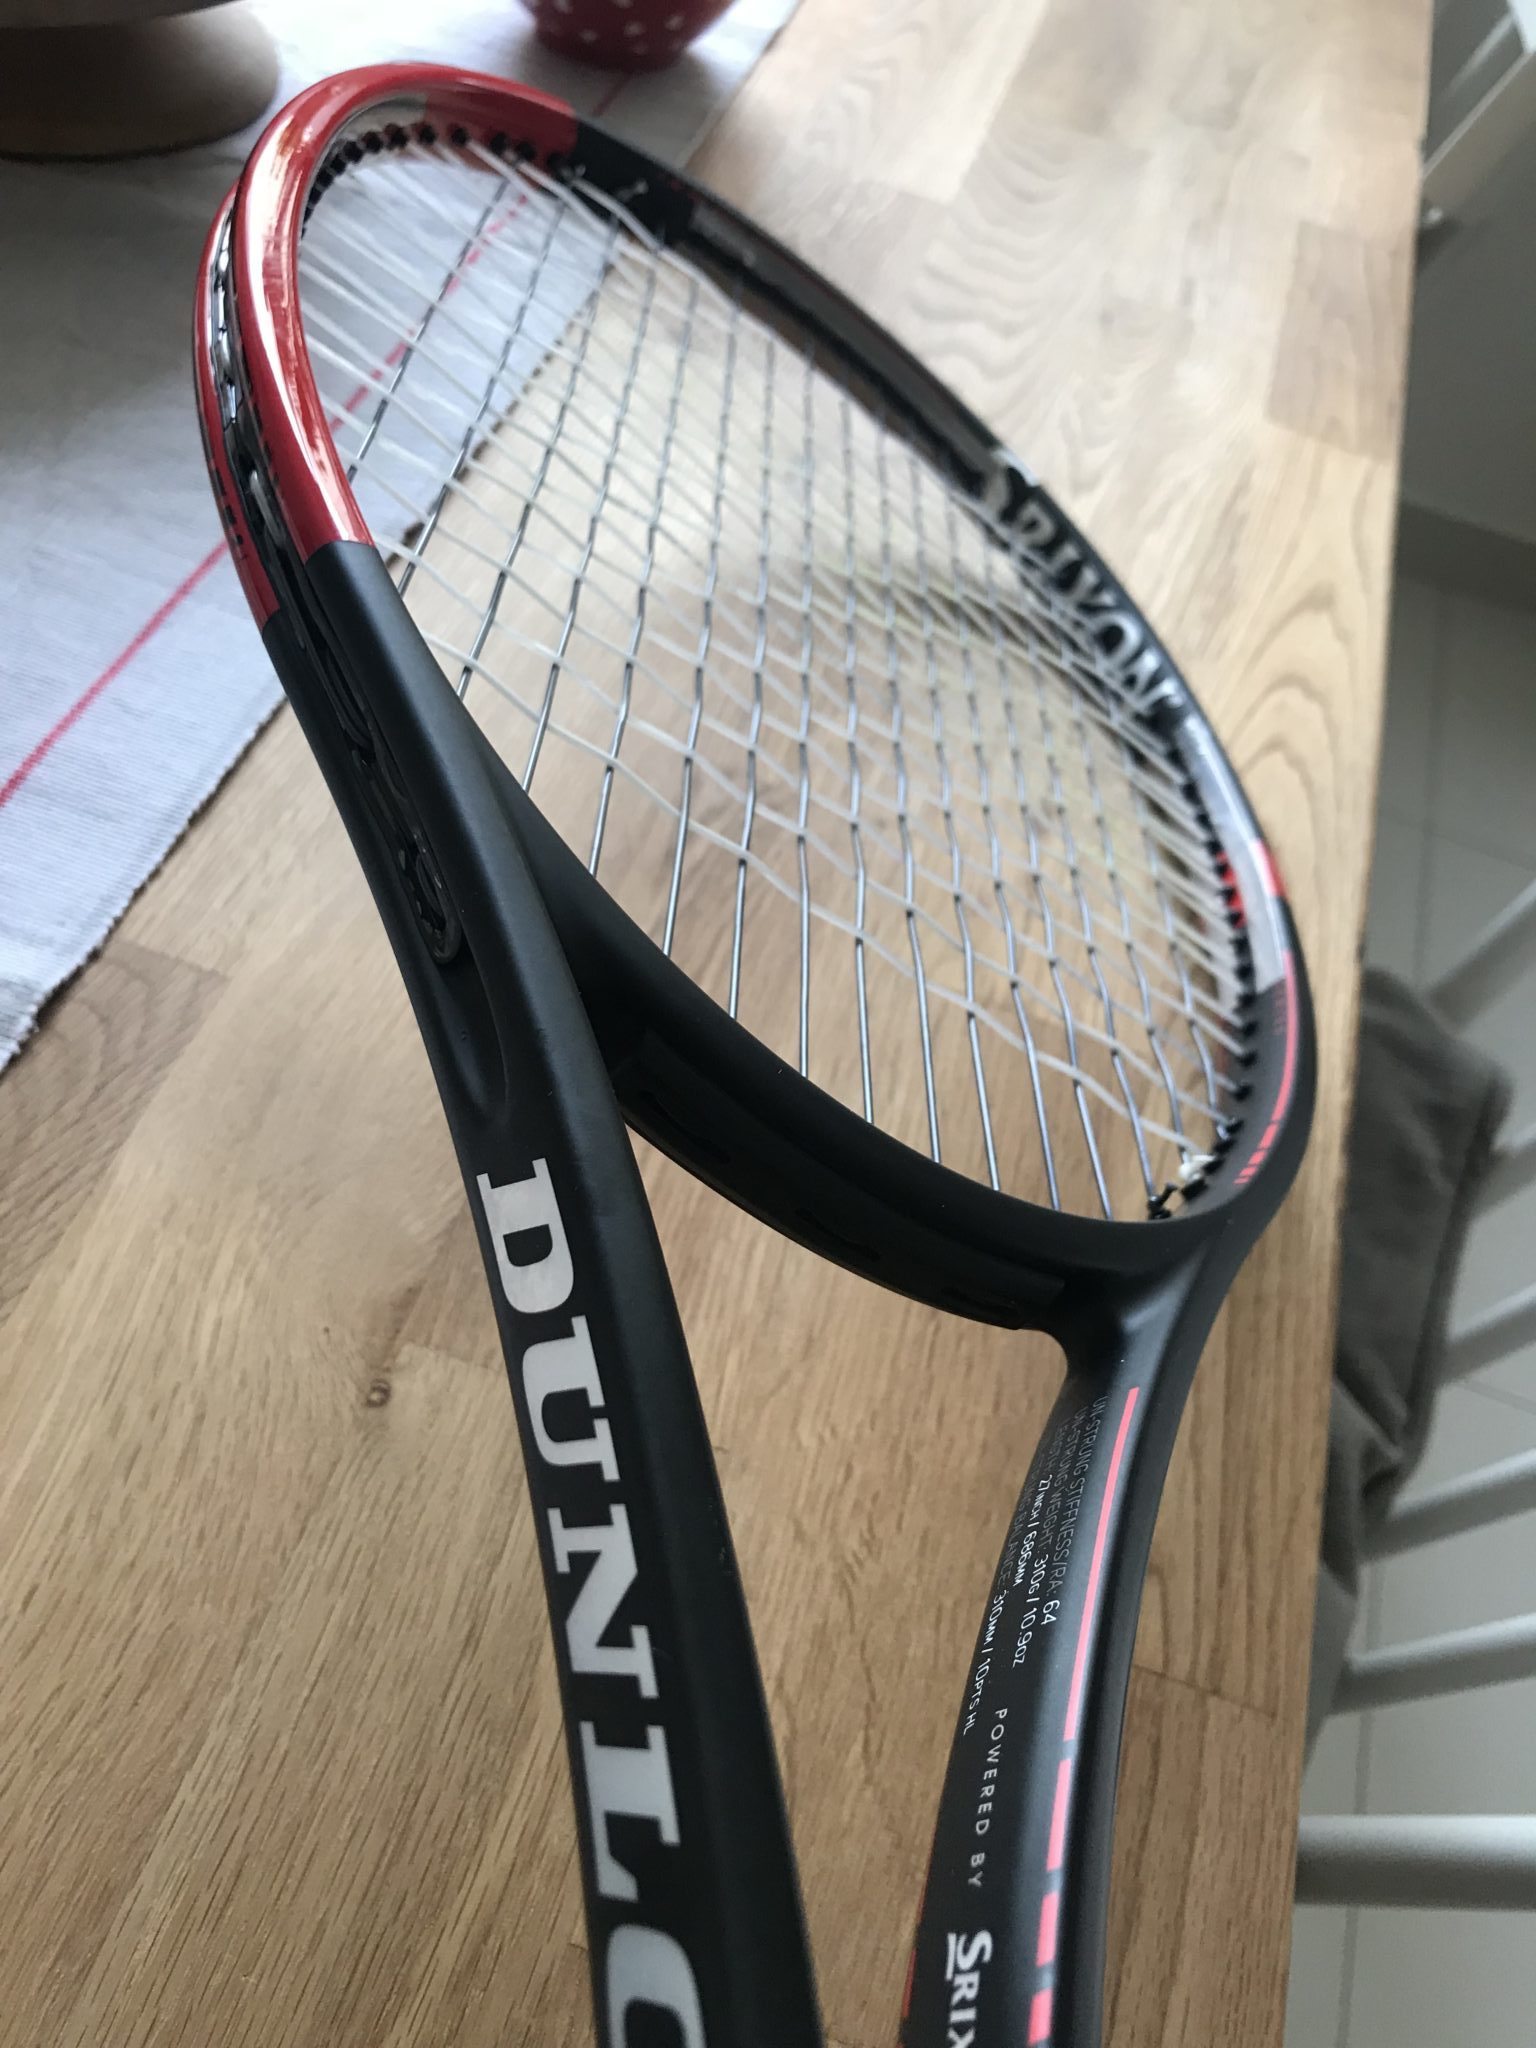 Dunlop Srixon CX 200 new tennis racquet 4 1/4 